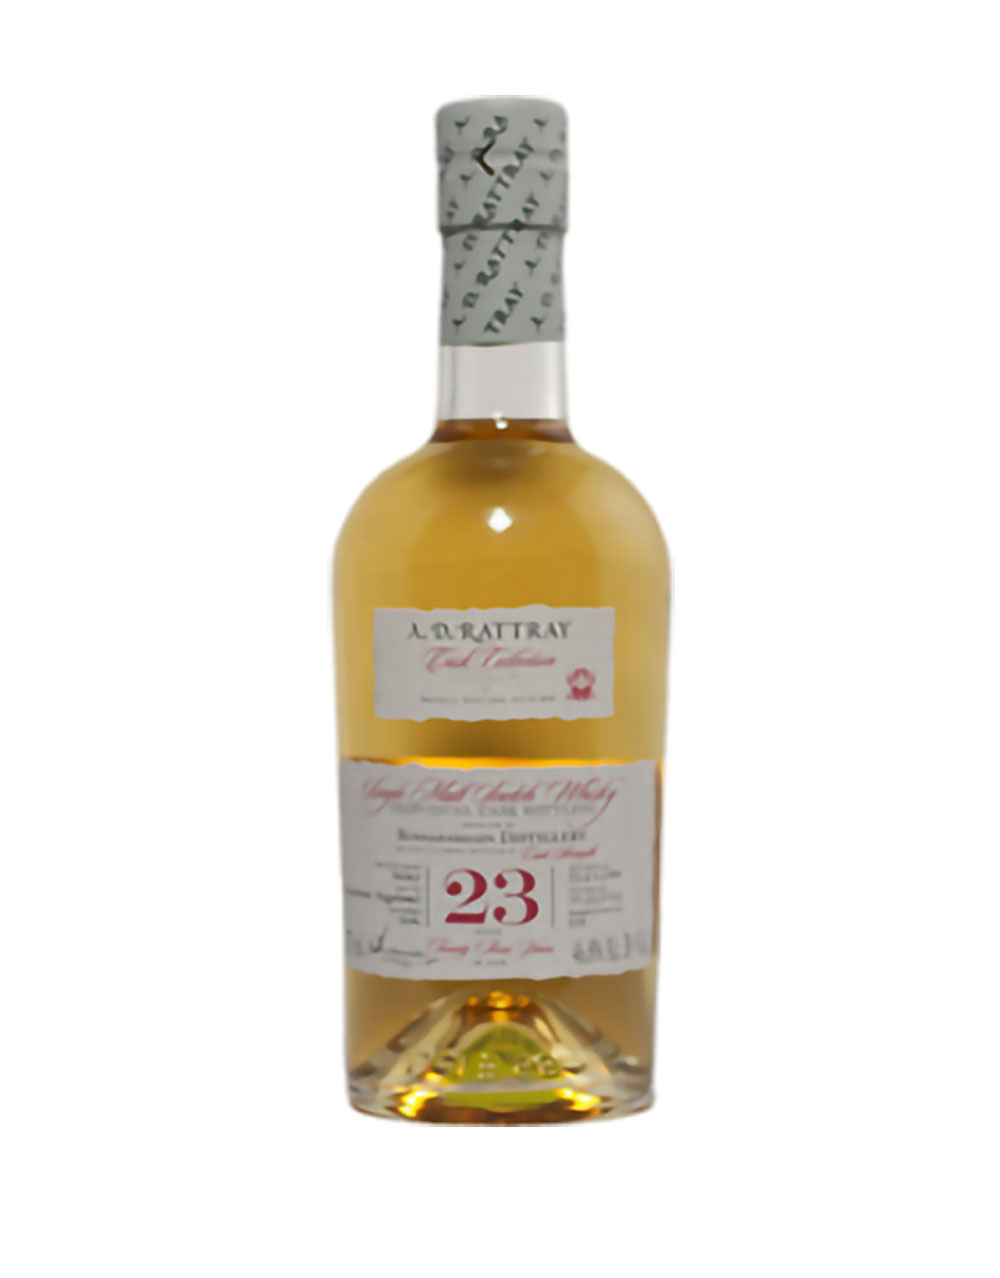 A.D. Rattray Cask Collection Bunnahabhain 23 Year Old Single Malt Scotch Whisky